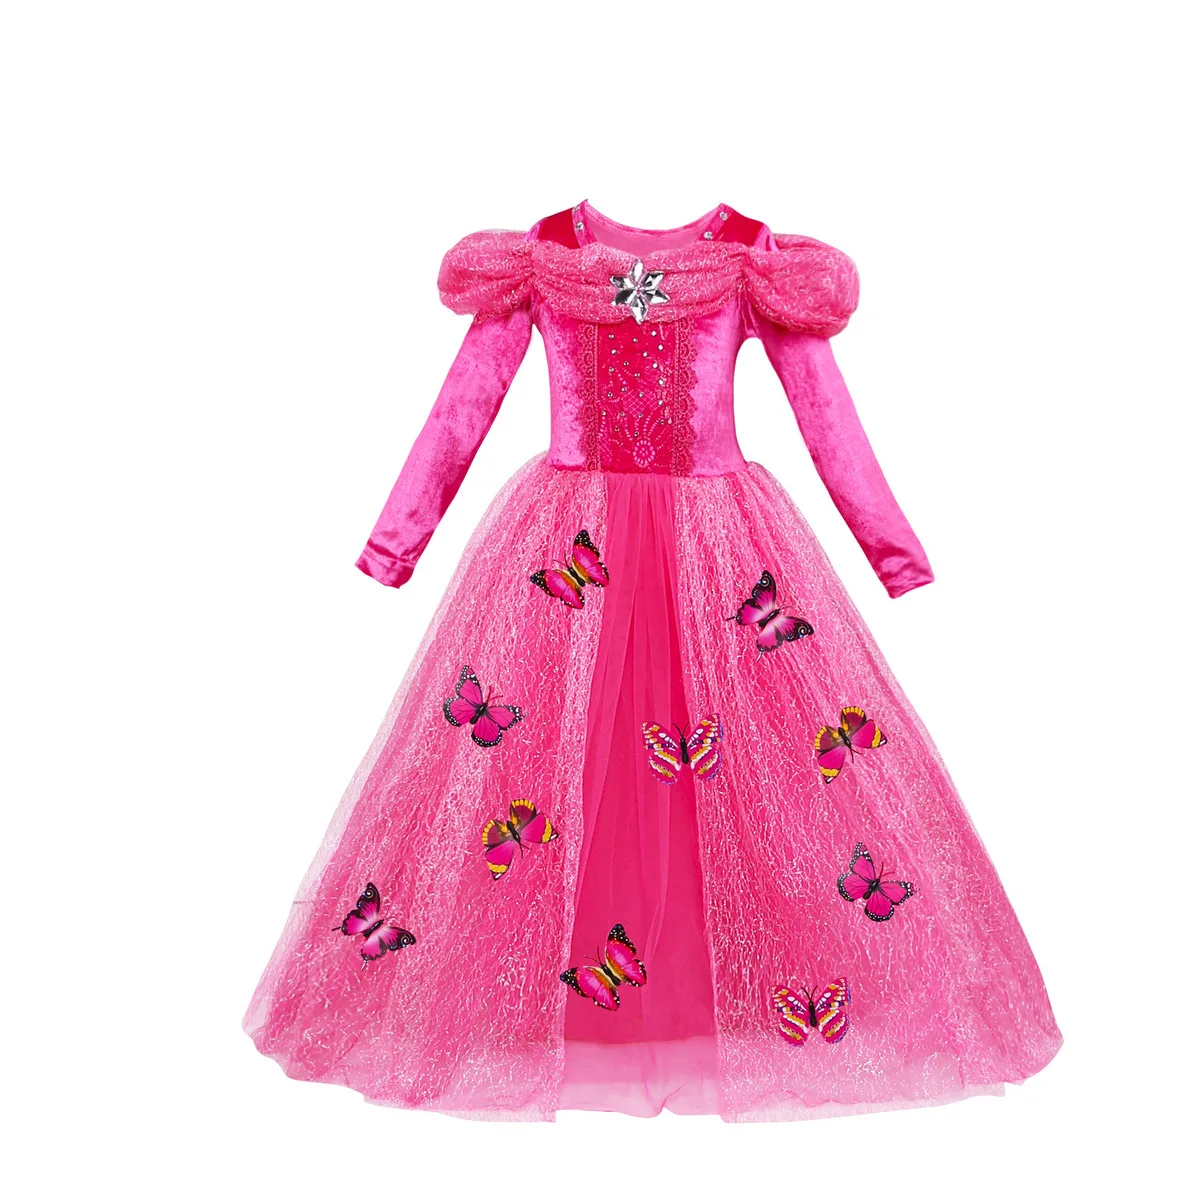 Дети Девочки с длинным рукавом принцесса бабочка Косплэй костюм вечерние платье элегантное платье детские составляют нарядное платье 3